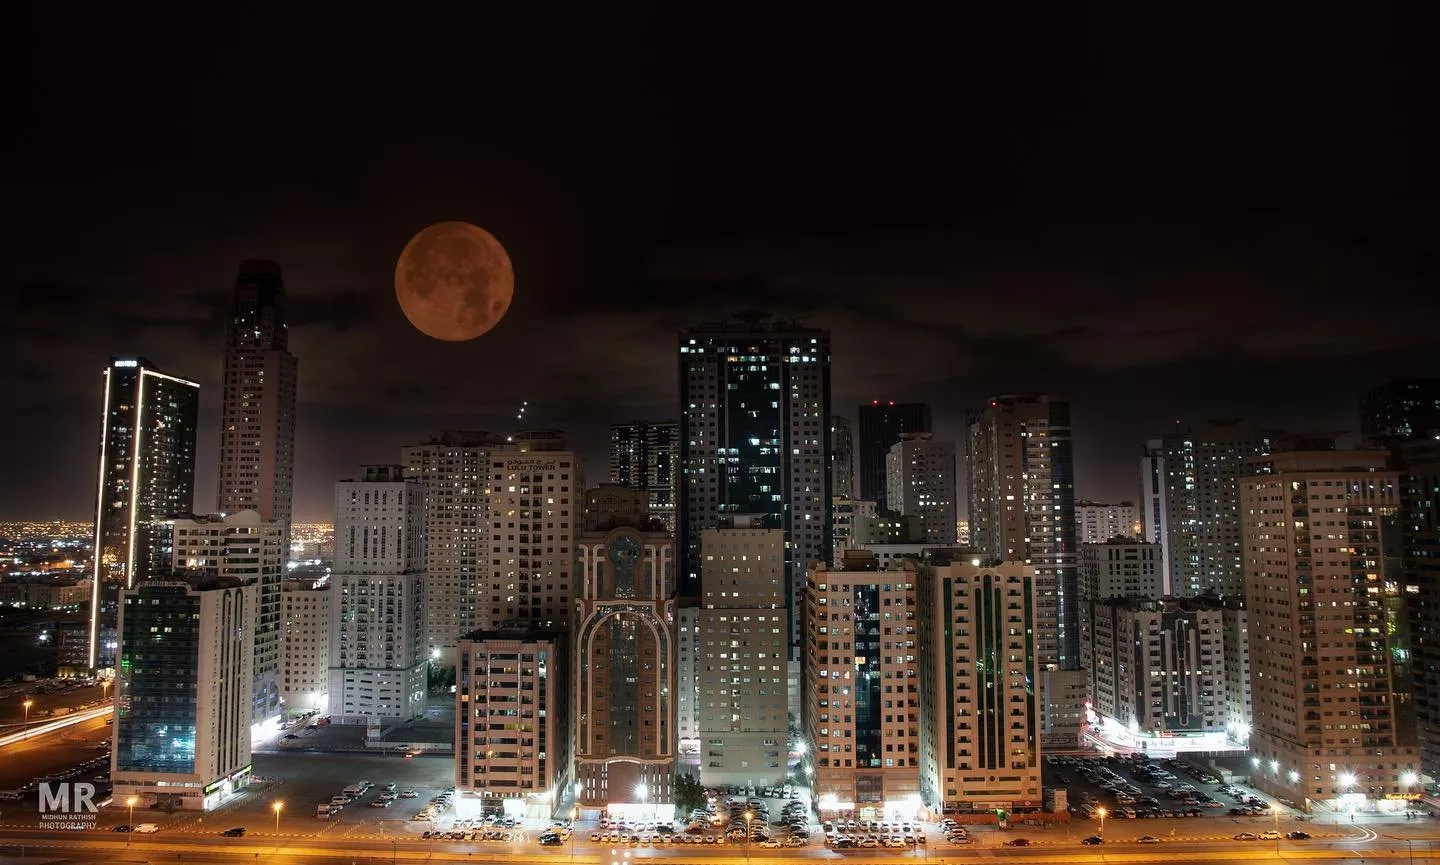 القمر العملاق ينير سماء الدول العربية والعالم... وهذه هي أجمل الصور له